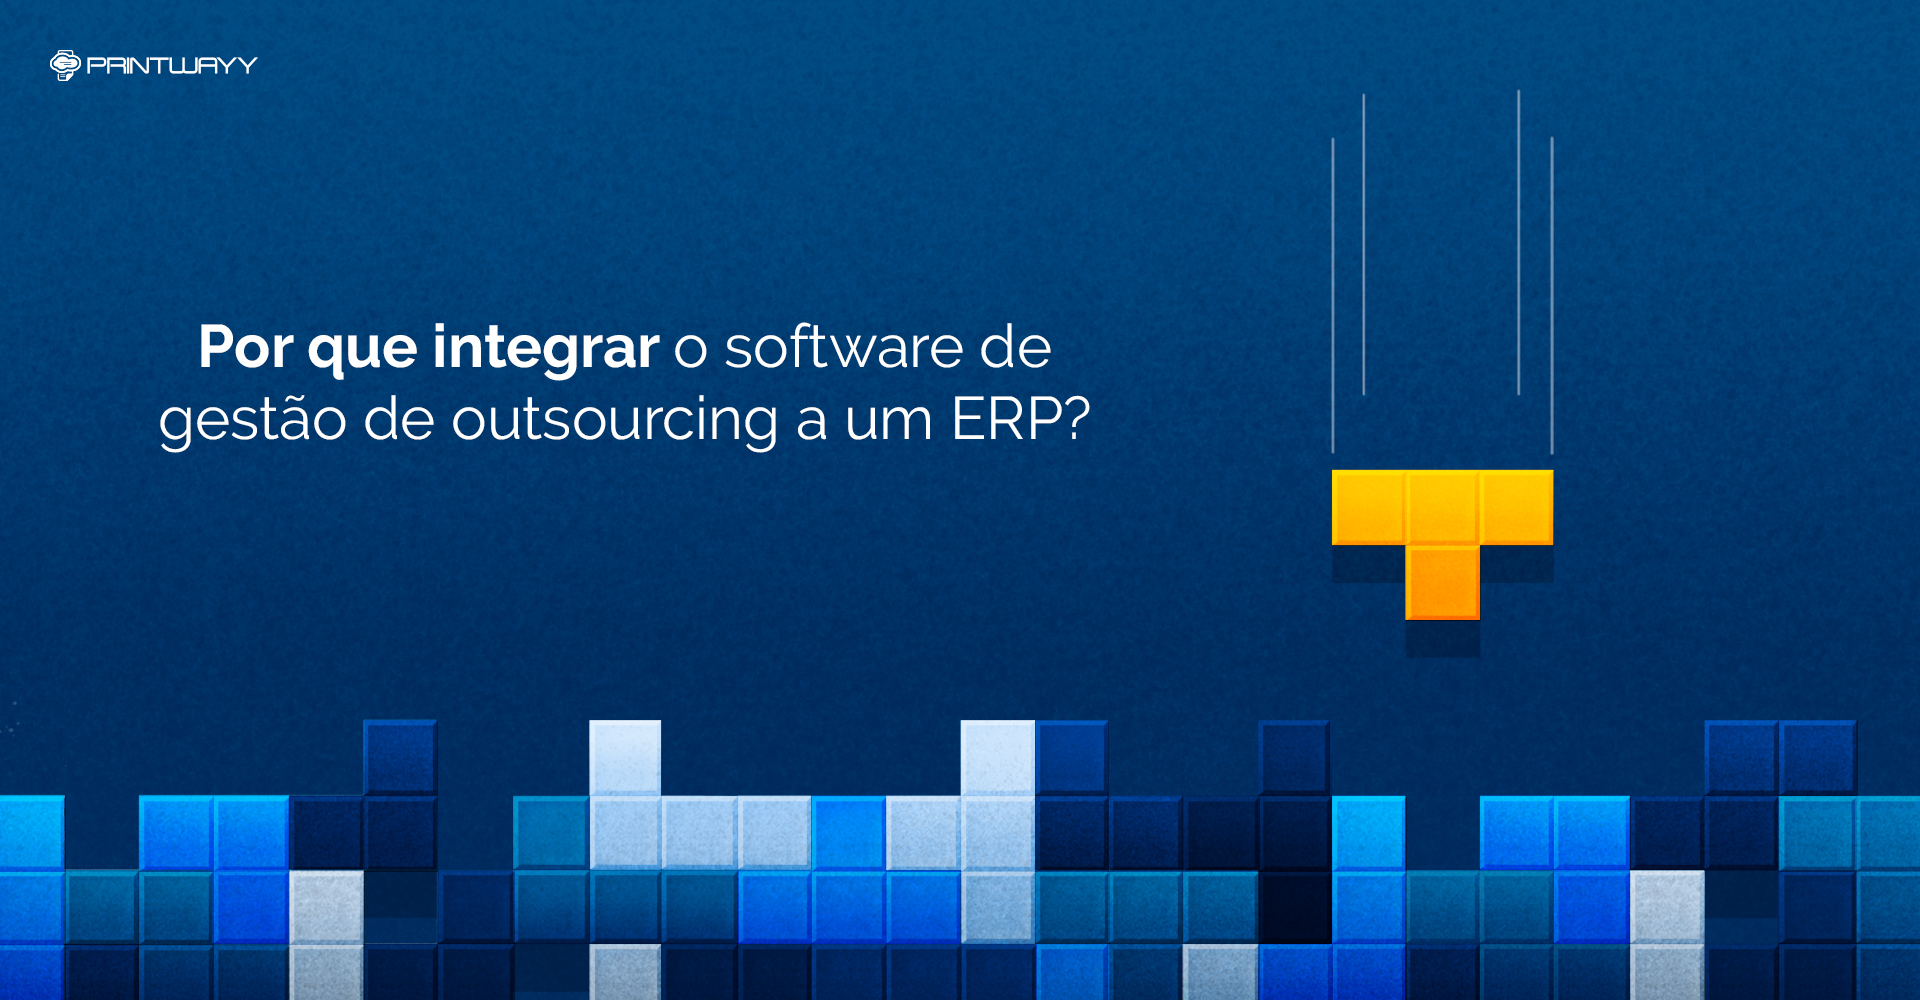 Ilustração de um jogo de tetris. Representa a integração de um software de gestão de outsourcing a um ERP.